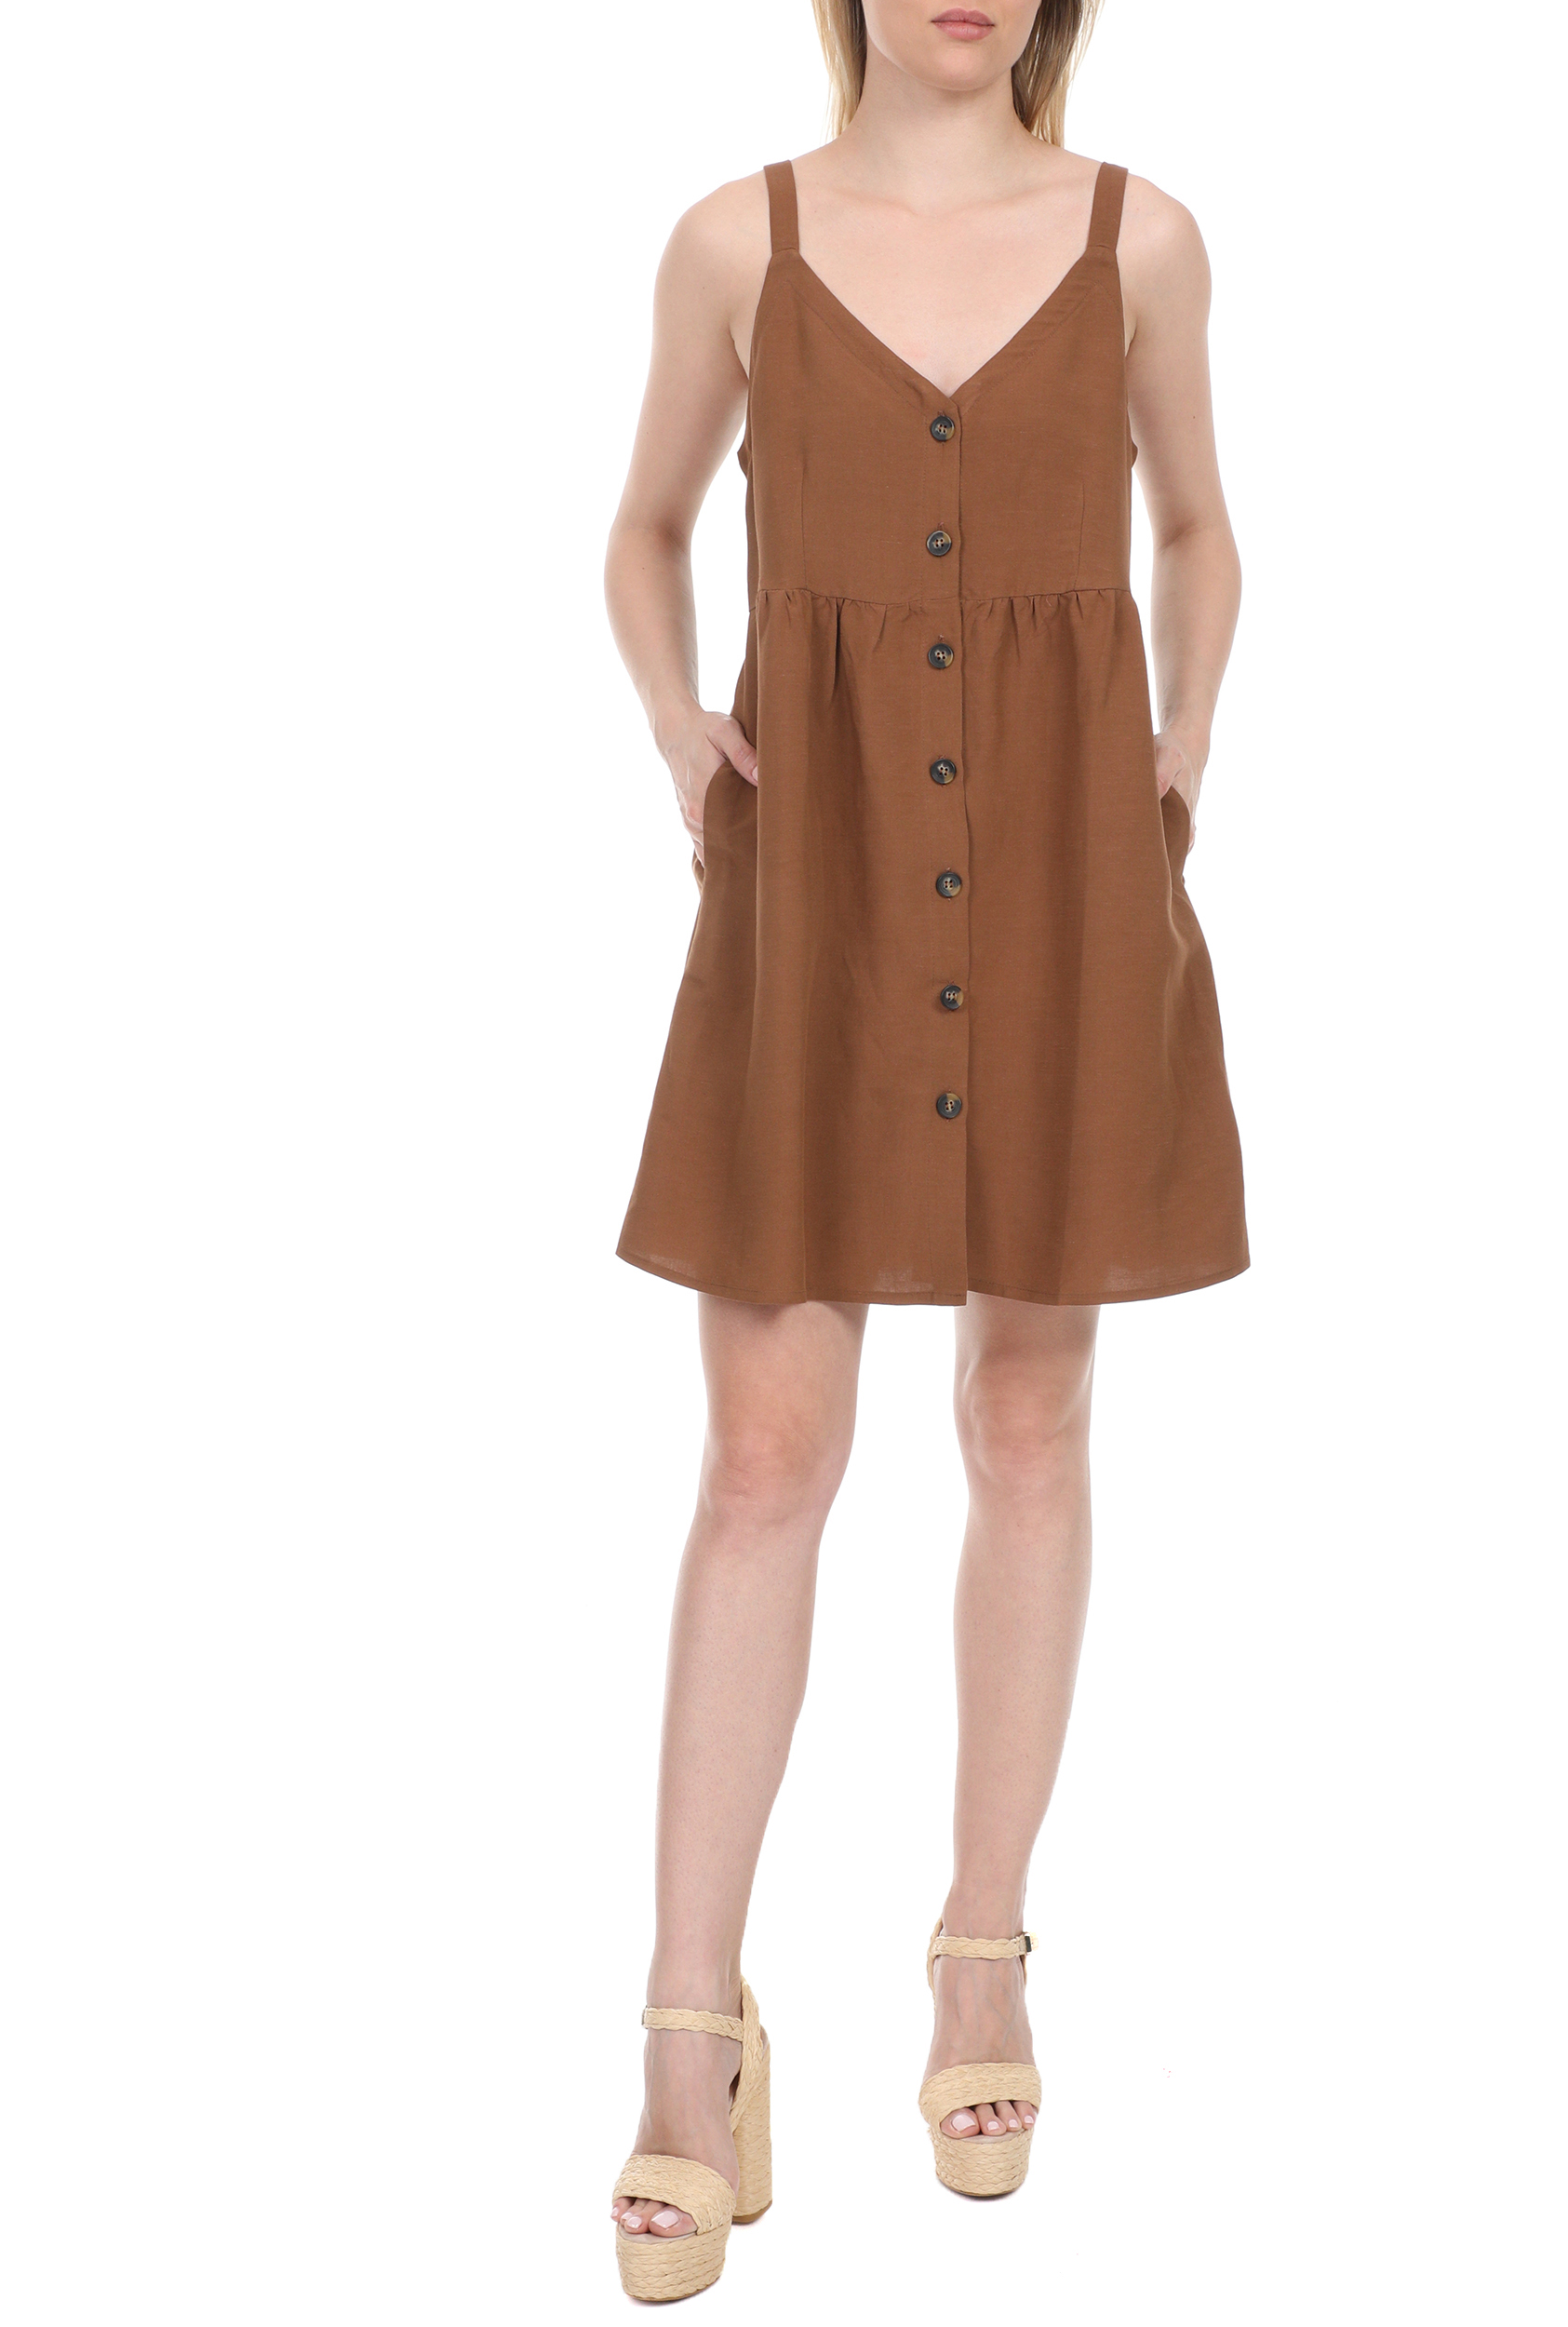 LA DOLLS – Γυναικείο mini φόρεμα LA DOLLS SAFARI καφέ